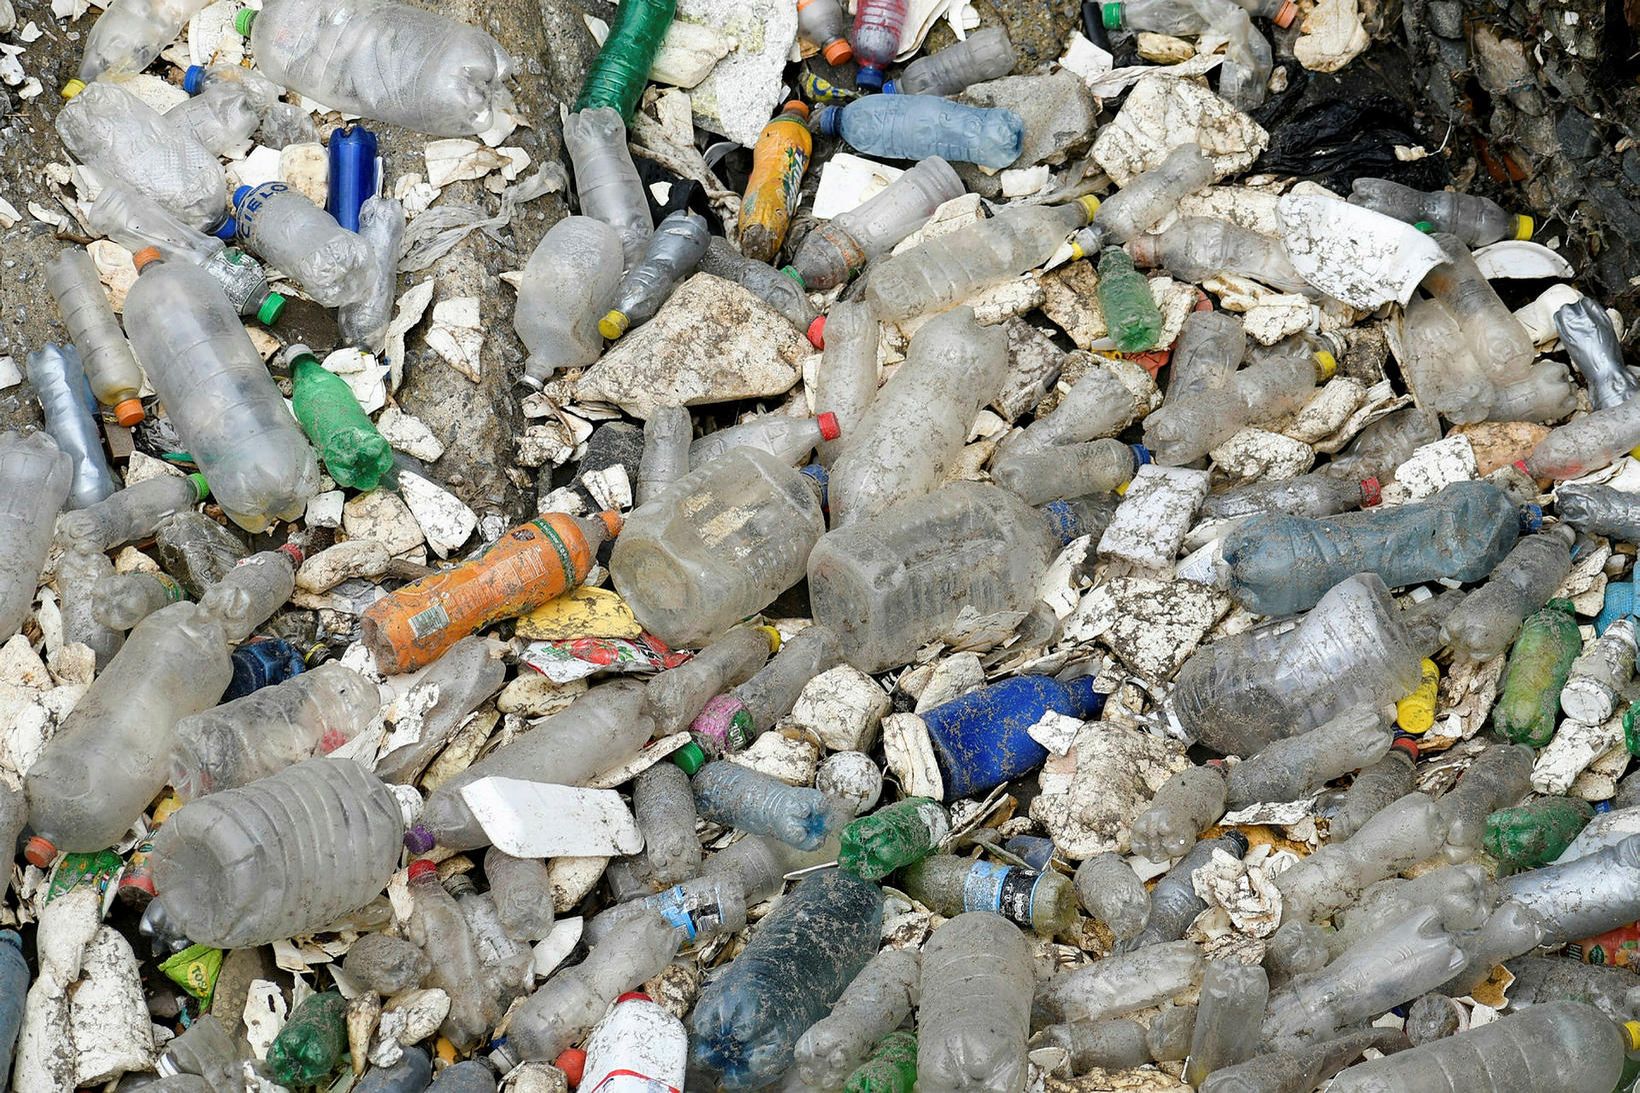 Um 85% af plasti er urðað í Kaliforníuríki í Bandaríkjunum.